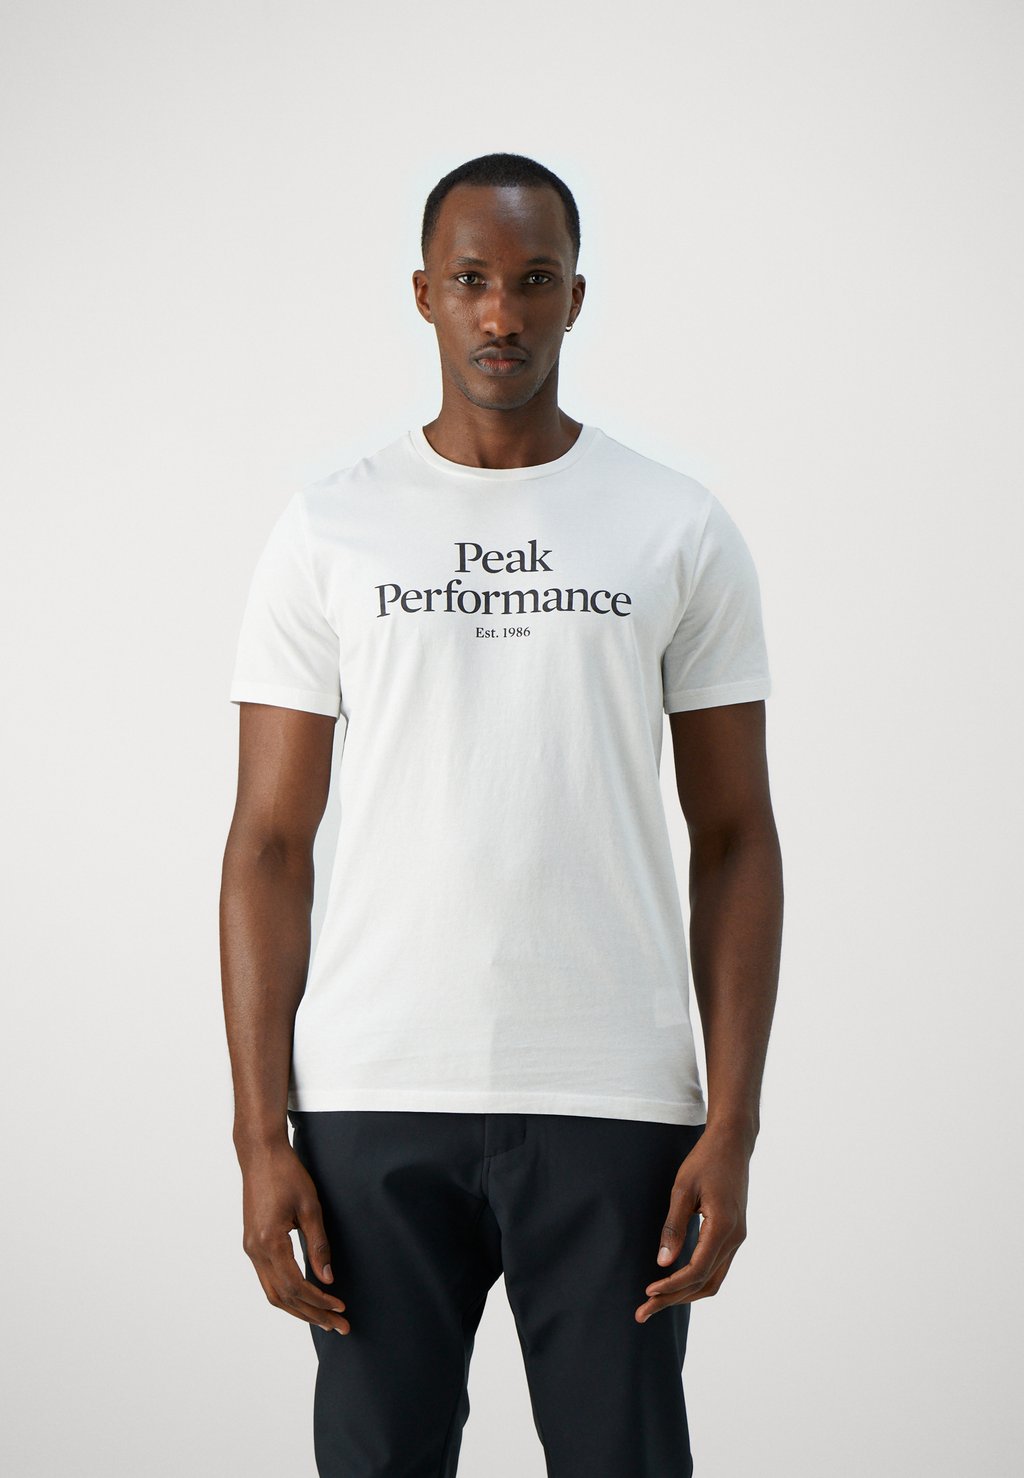 футболка с принтом original tee peak performance цвет med grey melange black Футболка с принтом Original Tee Peak Performance, цвет offwhite/black